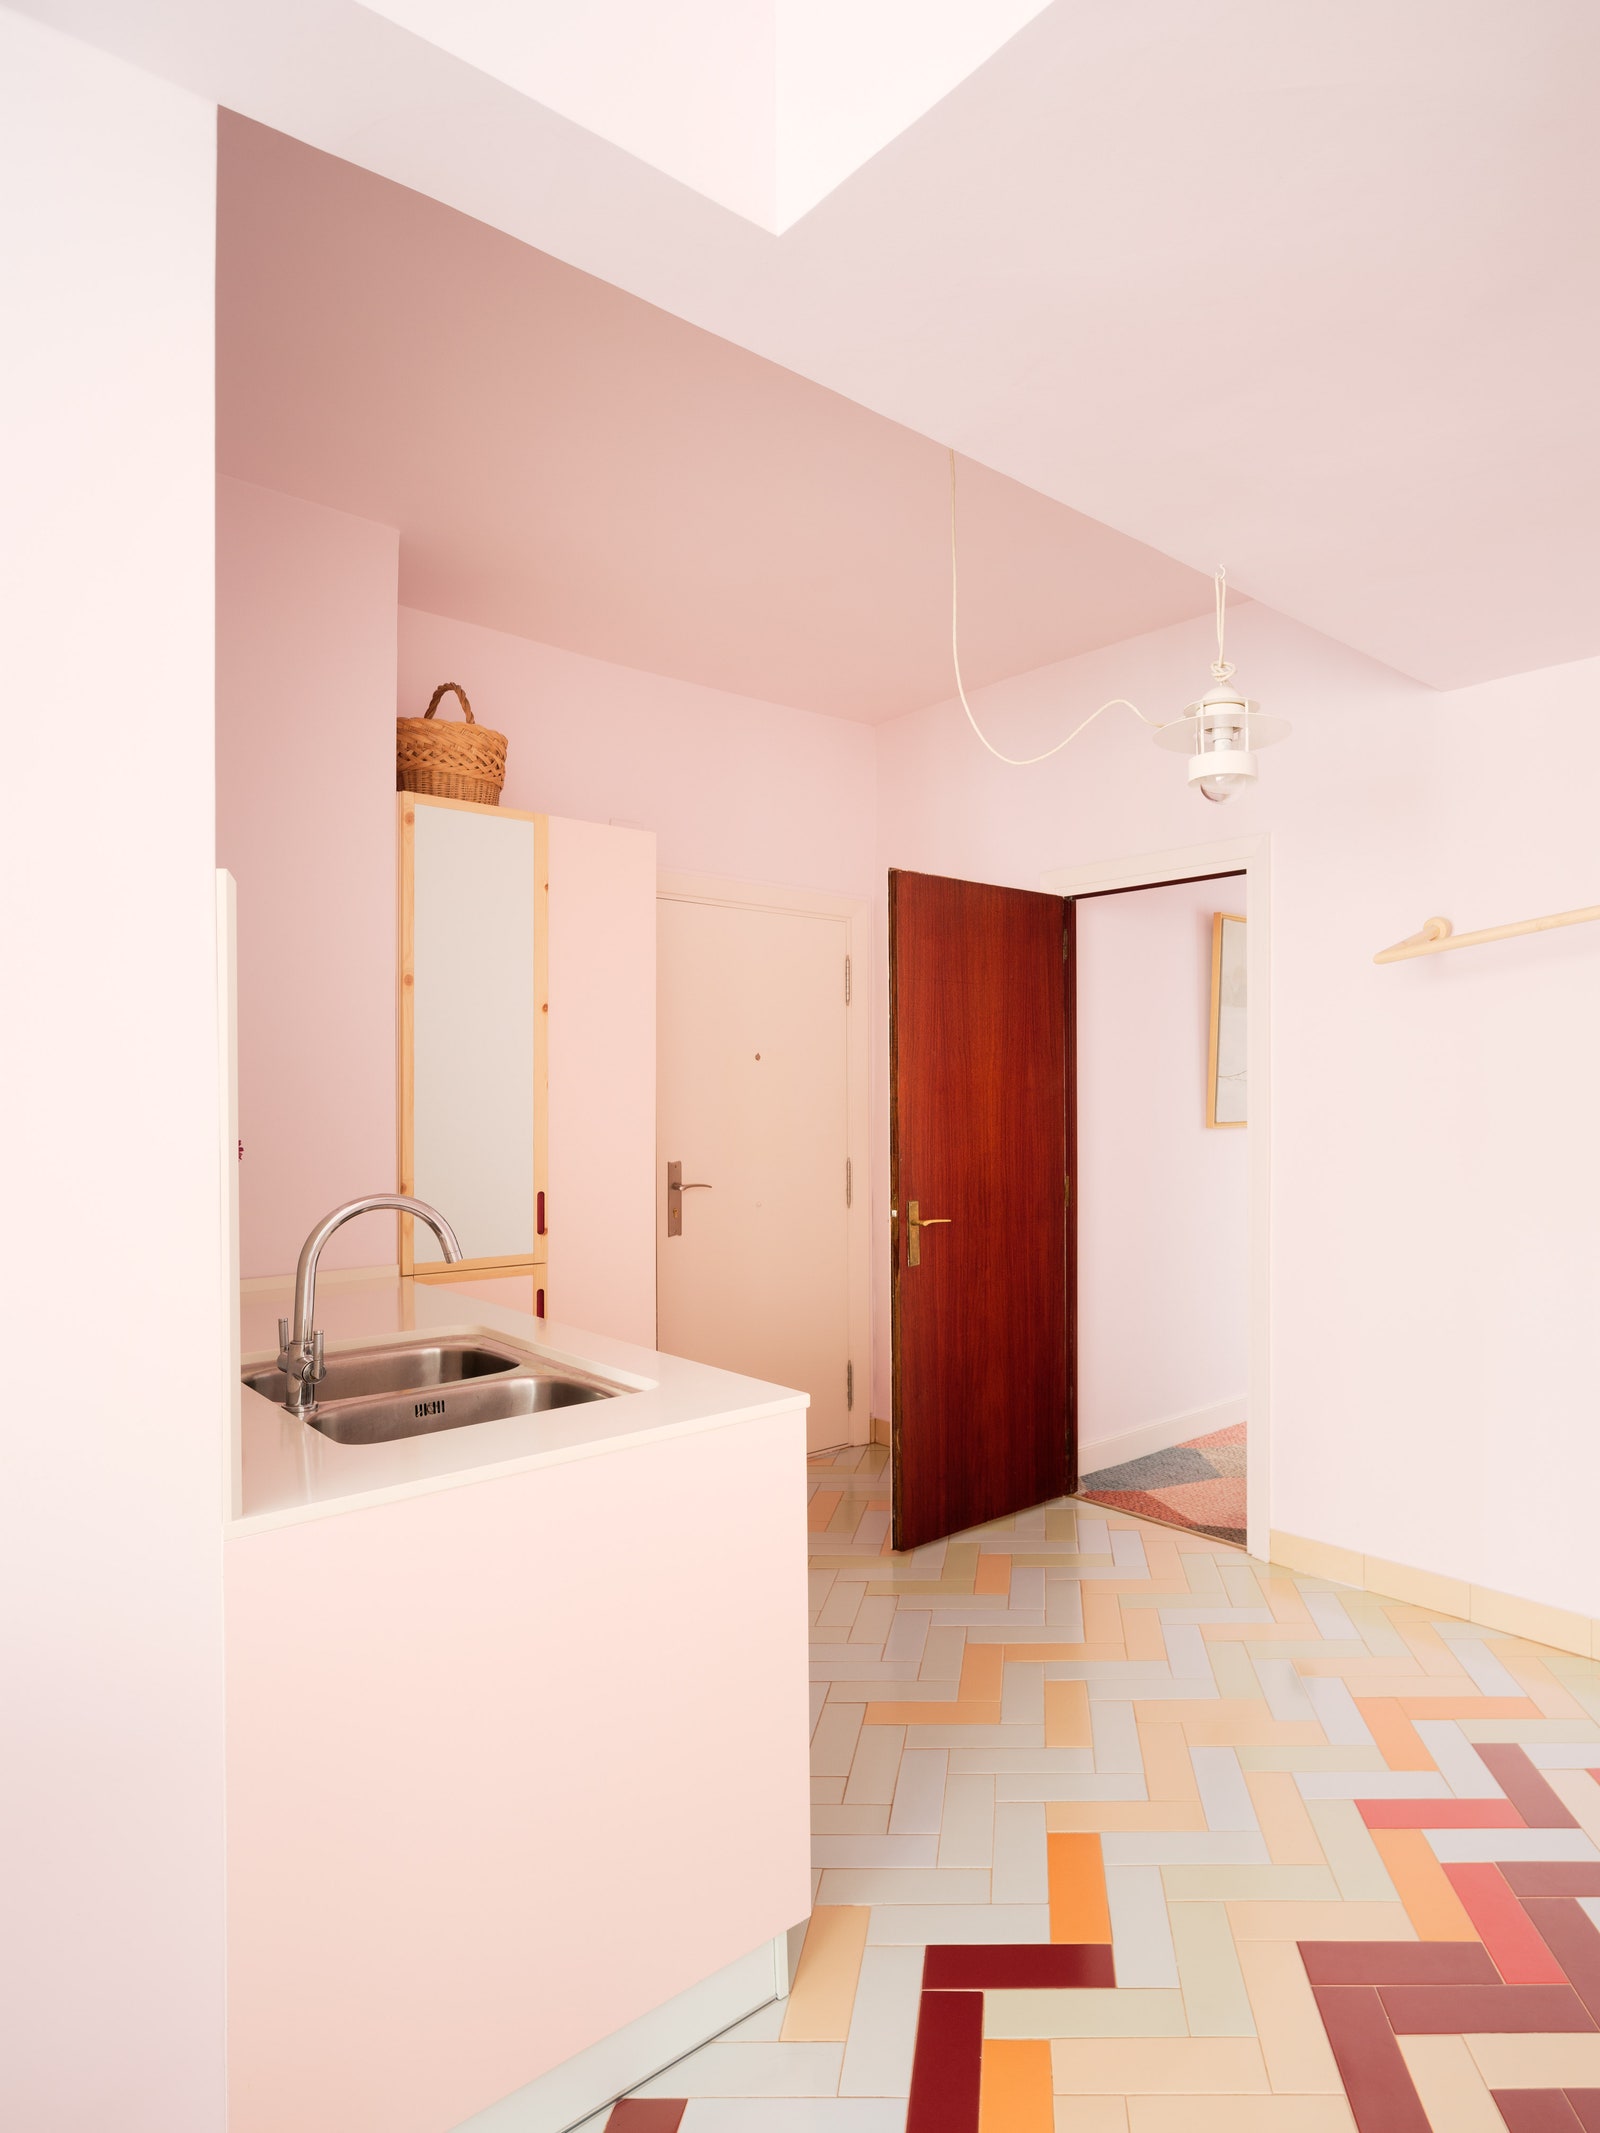 Розовая квартира в Бильбао по проекту студии Azab